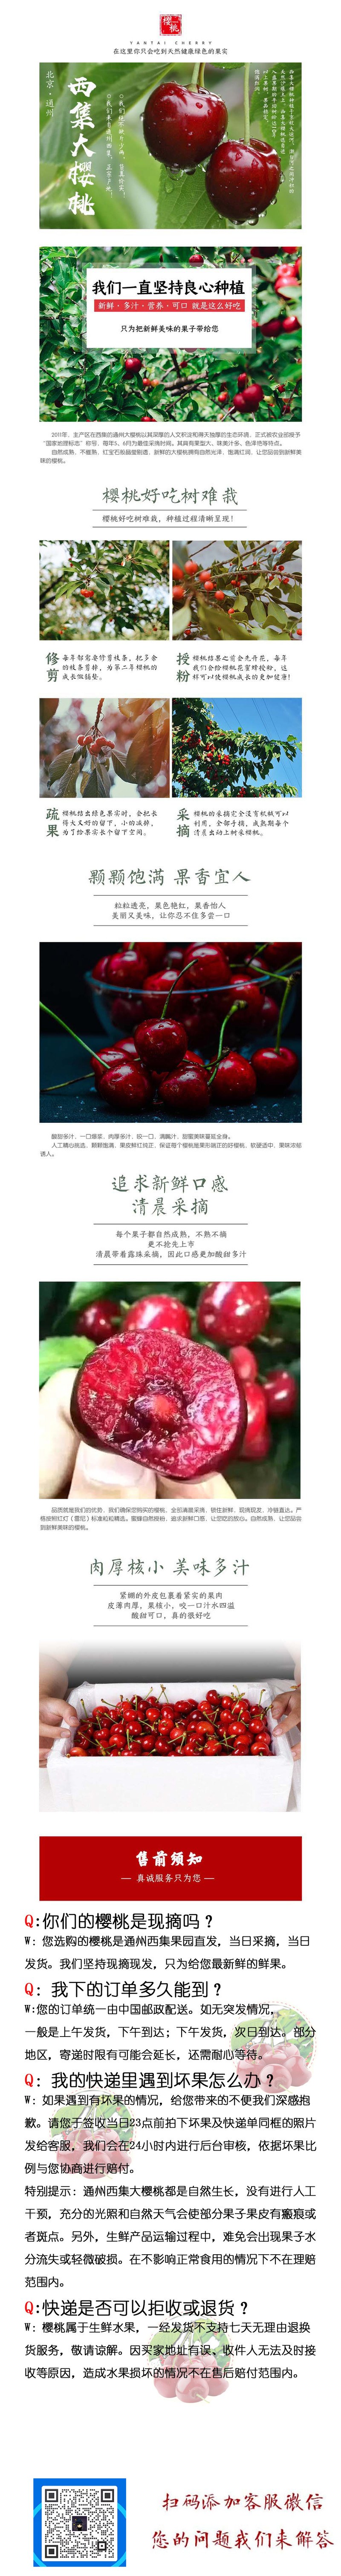 邮政农品 [北京馆][京郊农品]通州西集樱桃 精品2斤礼盒装